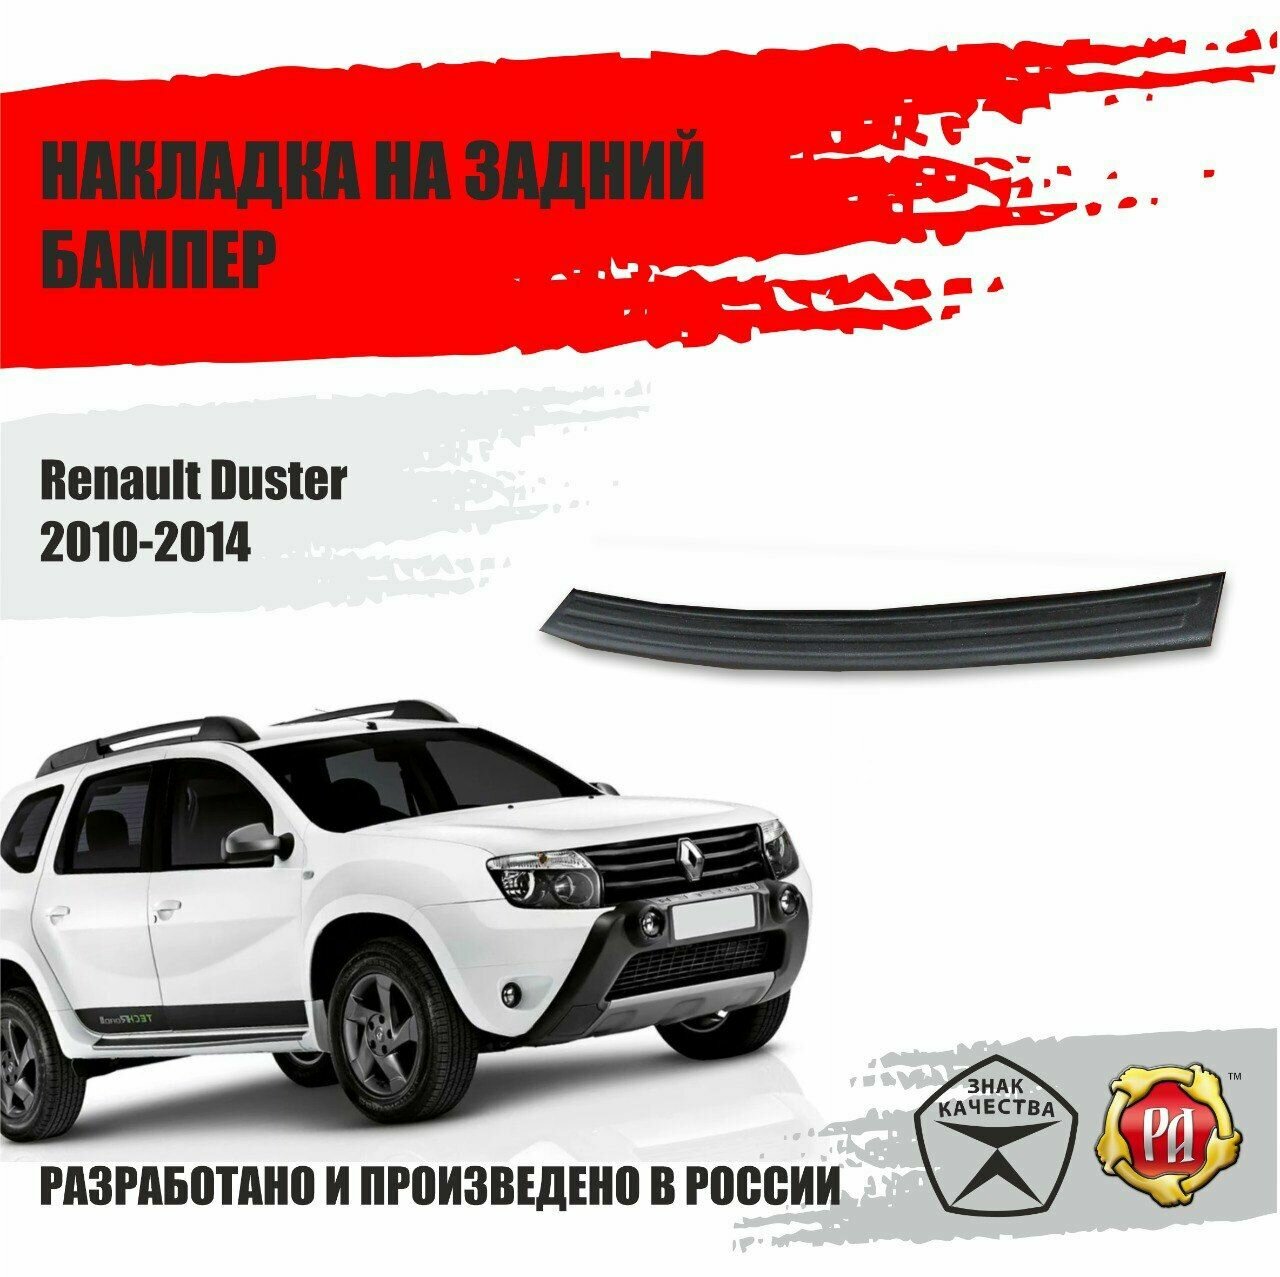 Накладка на задний бампер Русская Артель для Renault Duster